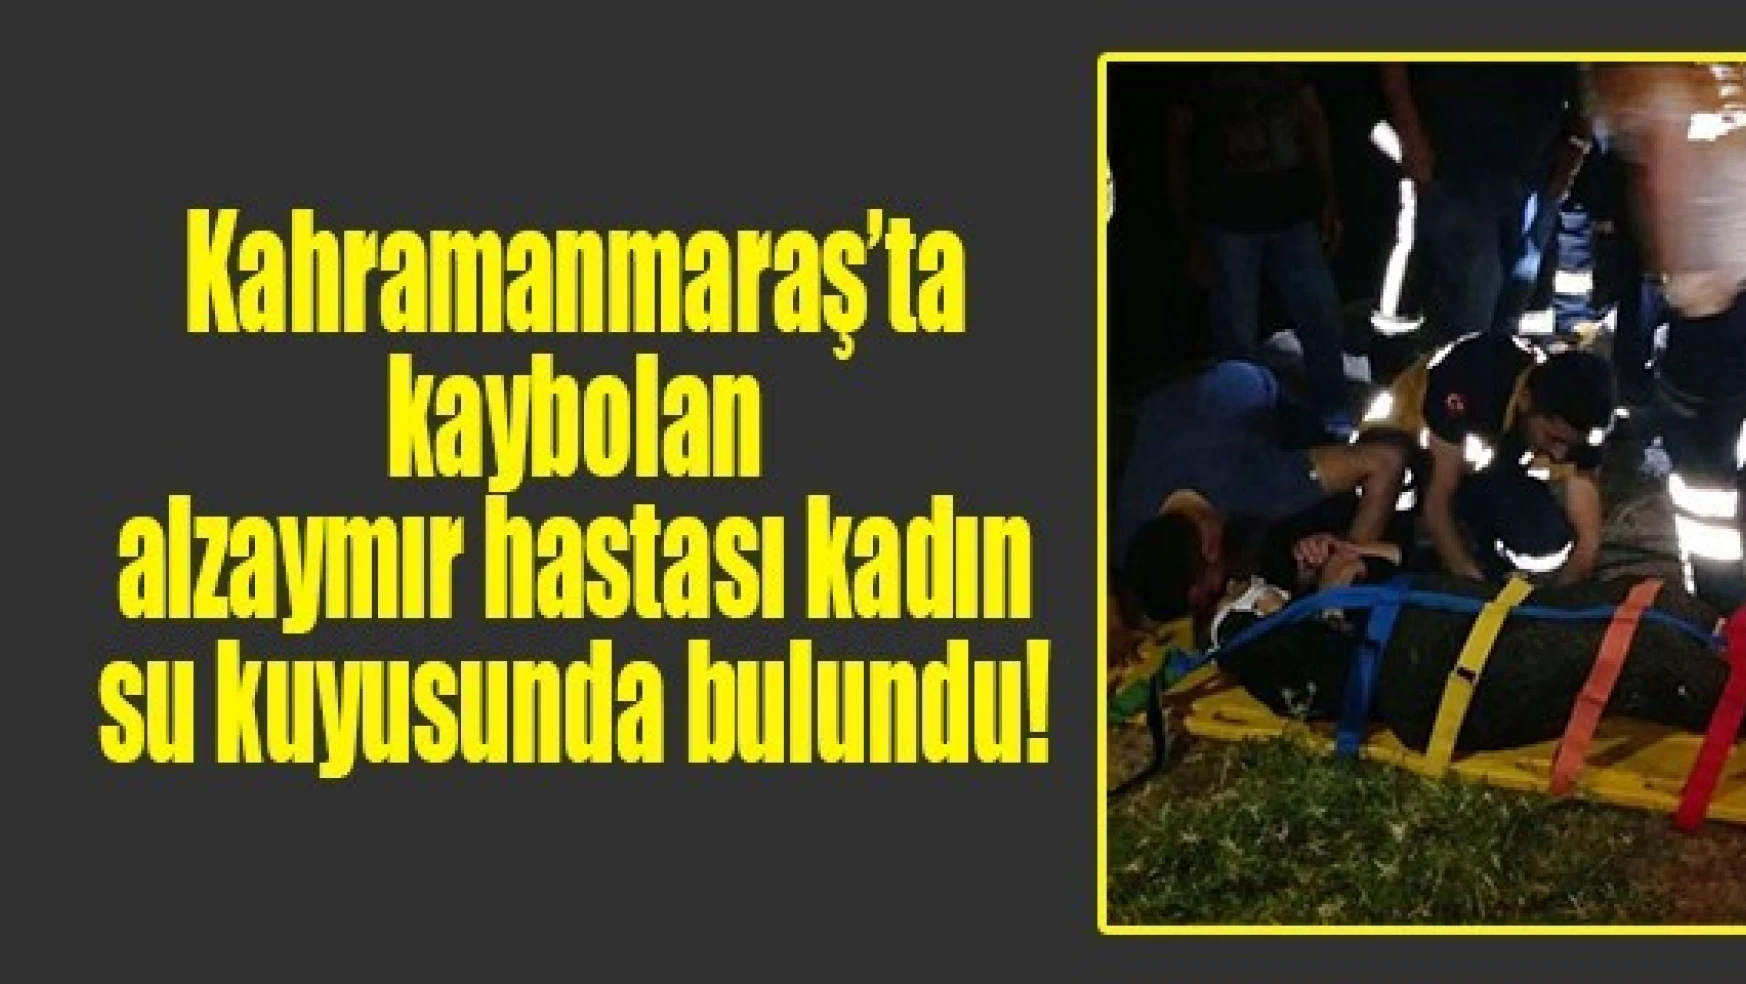 Kahramanmaraş'ta kaybolan alzaymır hastası kadın su kuyusunda bulundu!